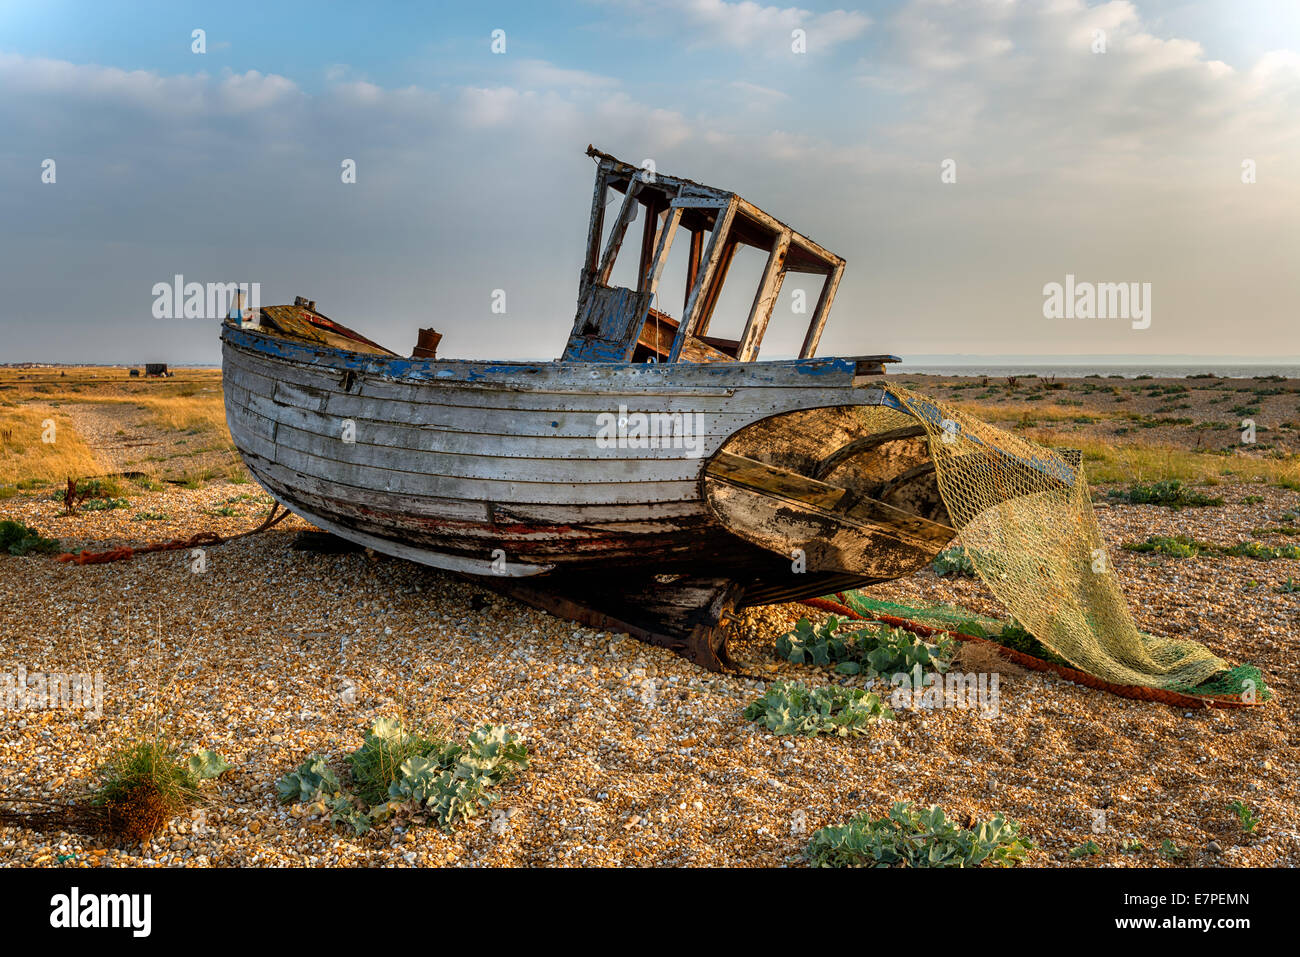 Vieux bateau de pêche en bois échoué sur une plage de galets Photo Stock -  Alamy